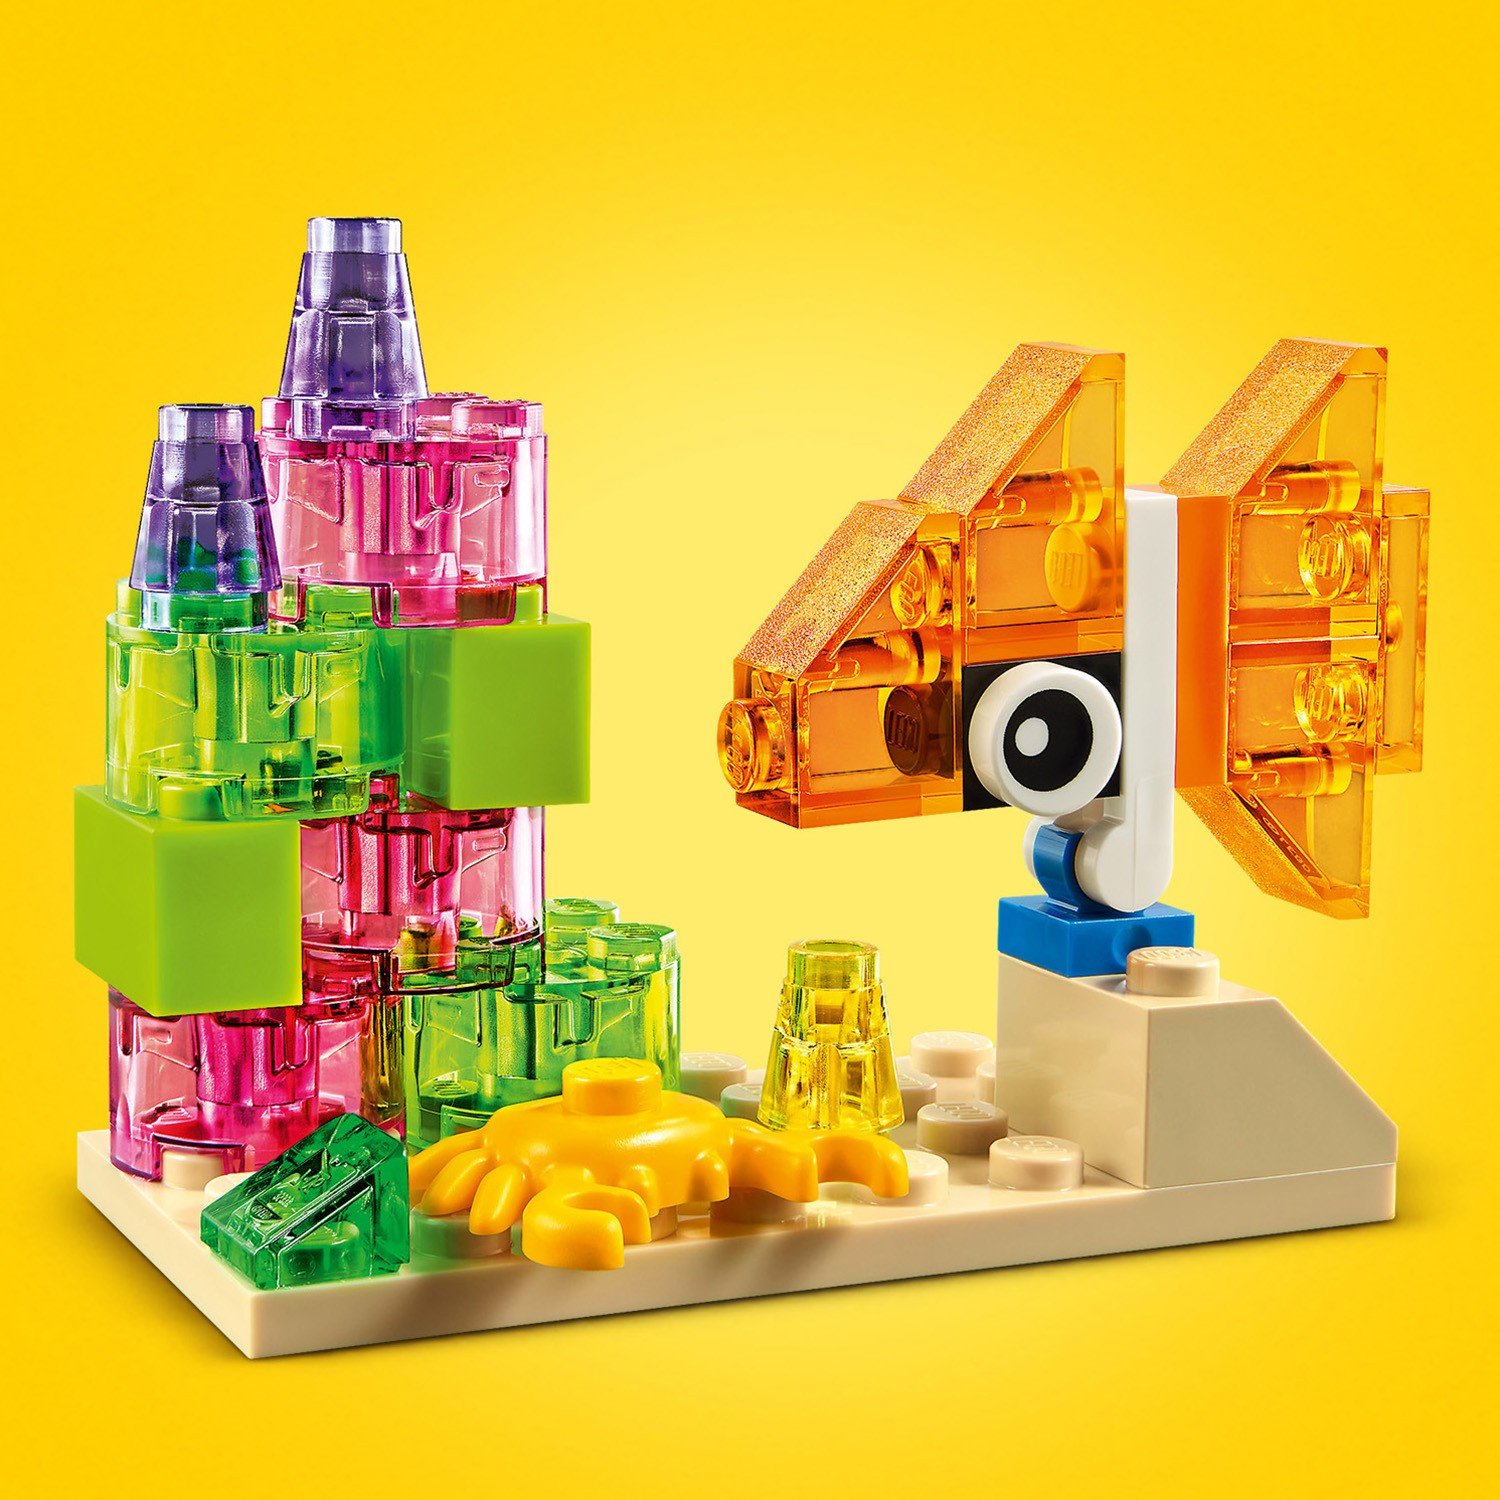 Lego Classic 11013 Прозрачные кубики